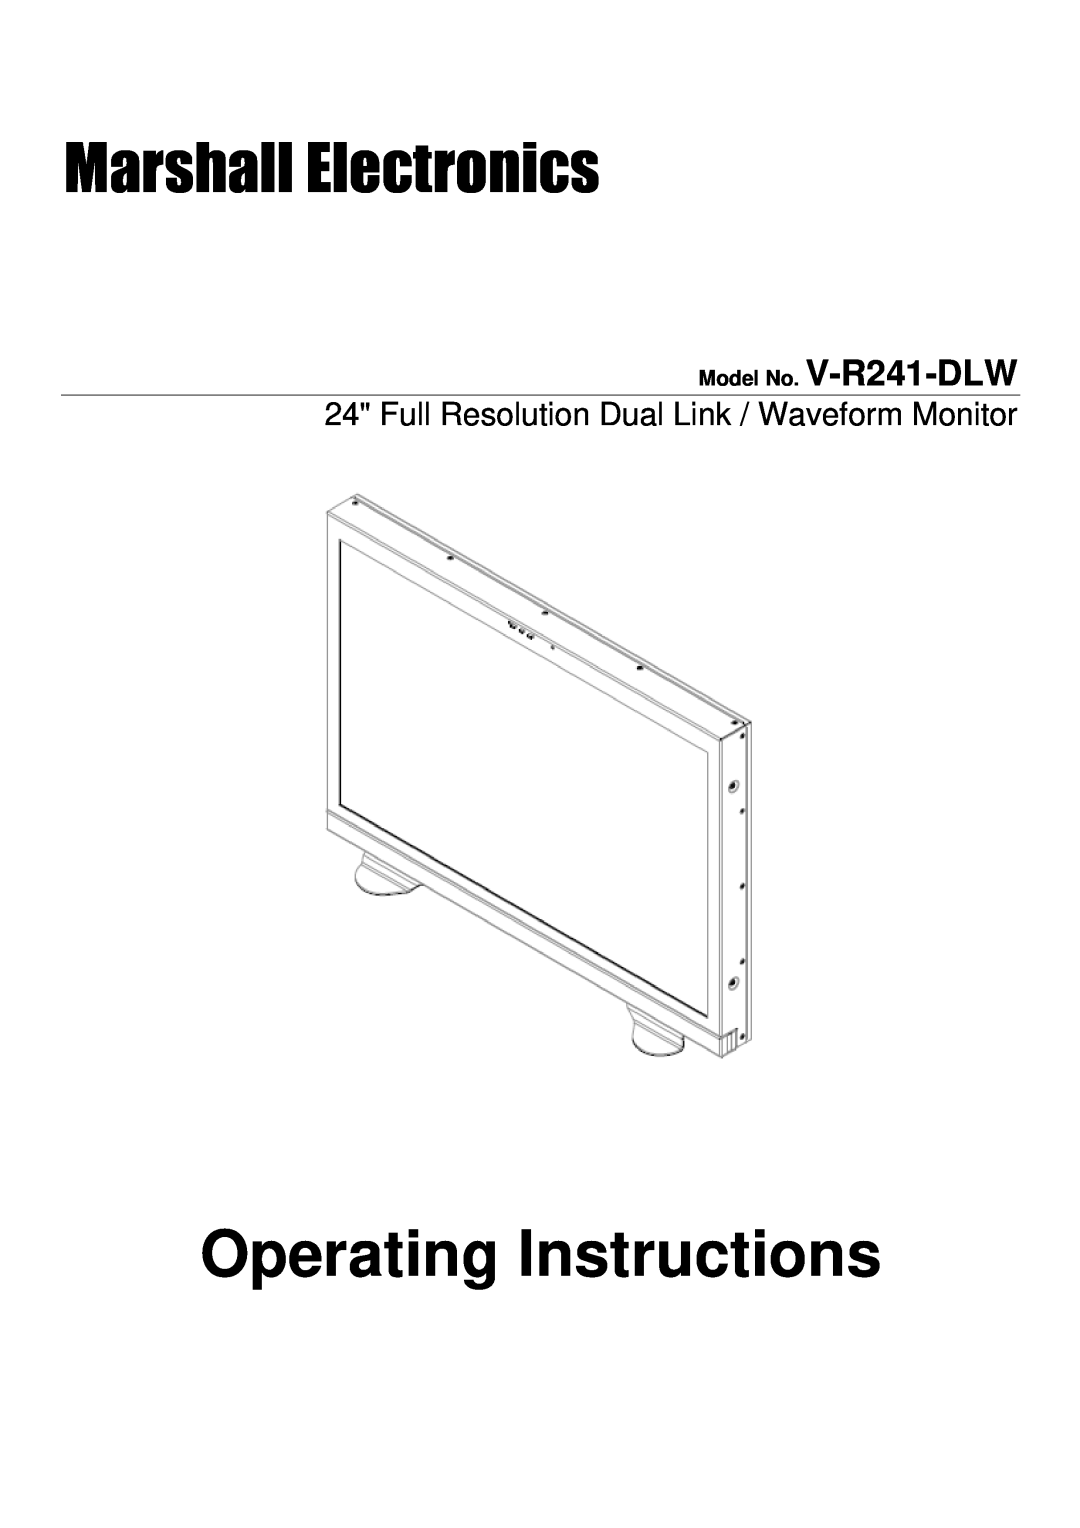 Marshall electronic manual Model No. V-R241-DLW, Operating Instructions, Marshall Electronics 